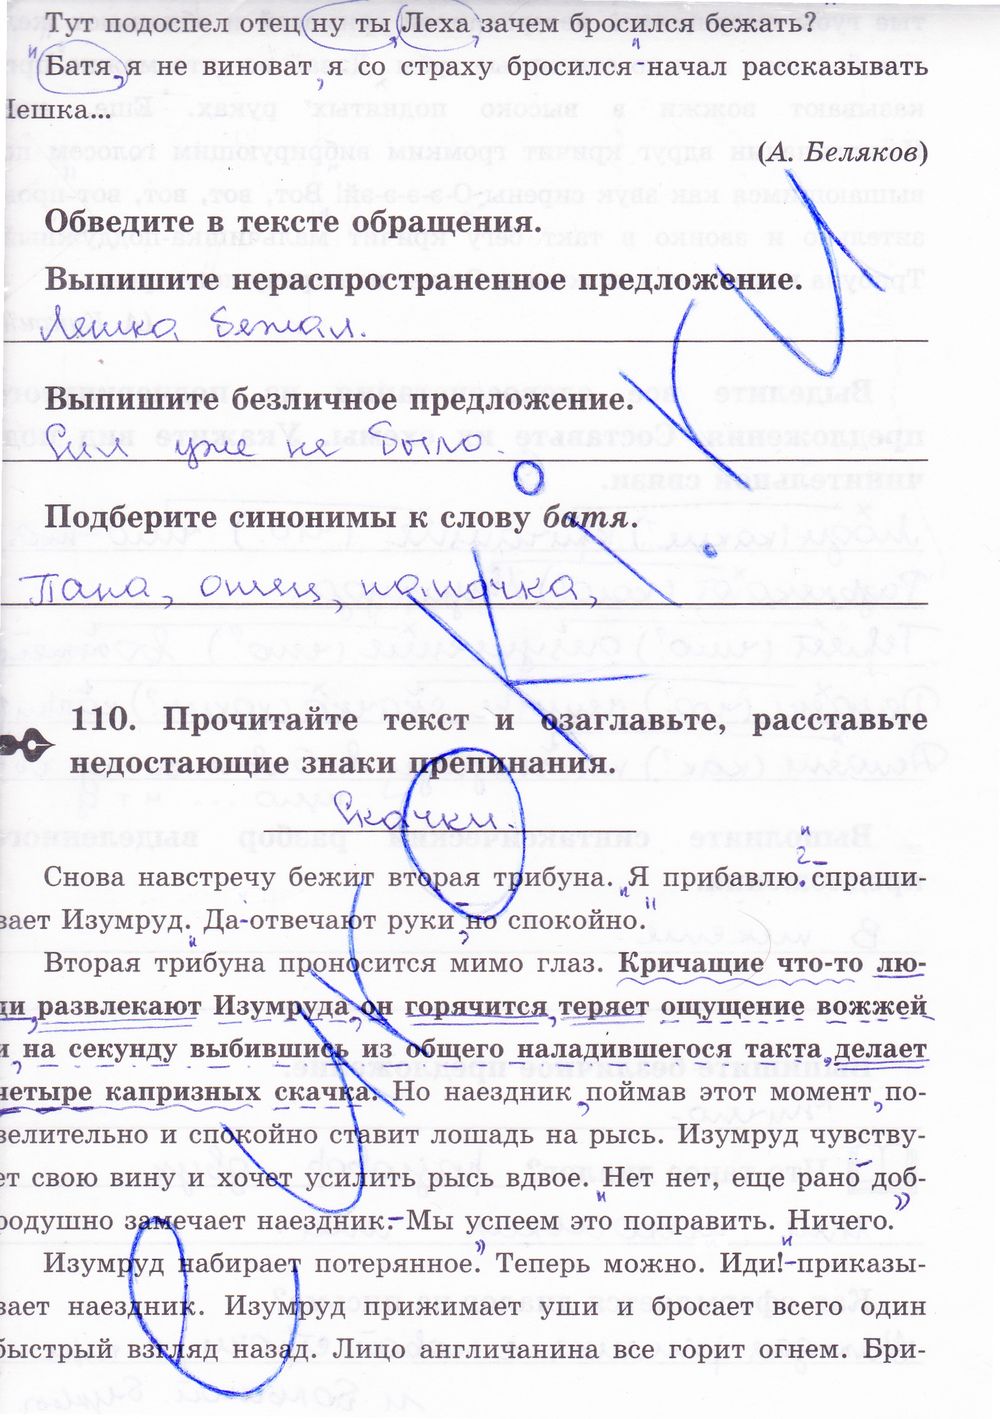 ГДЗ Русский язык 8 класс - стр. 101